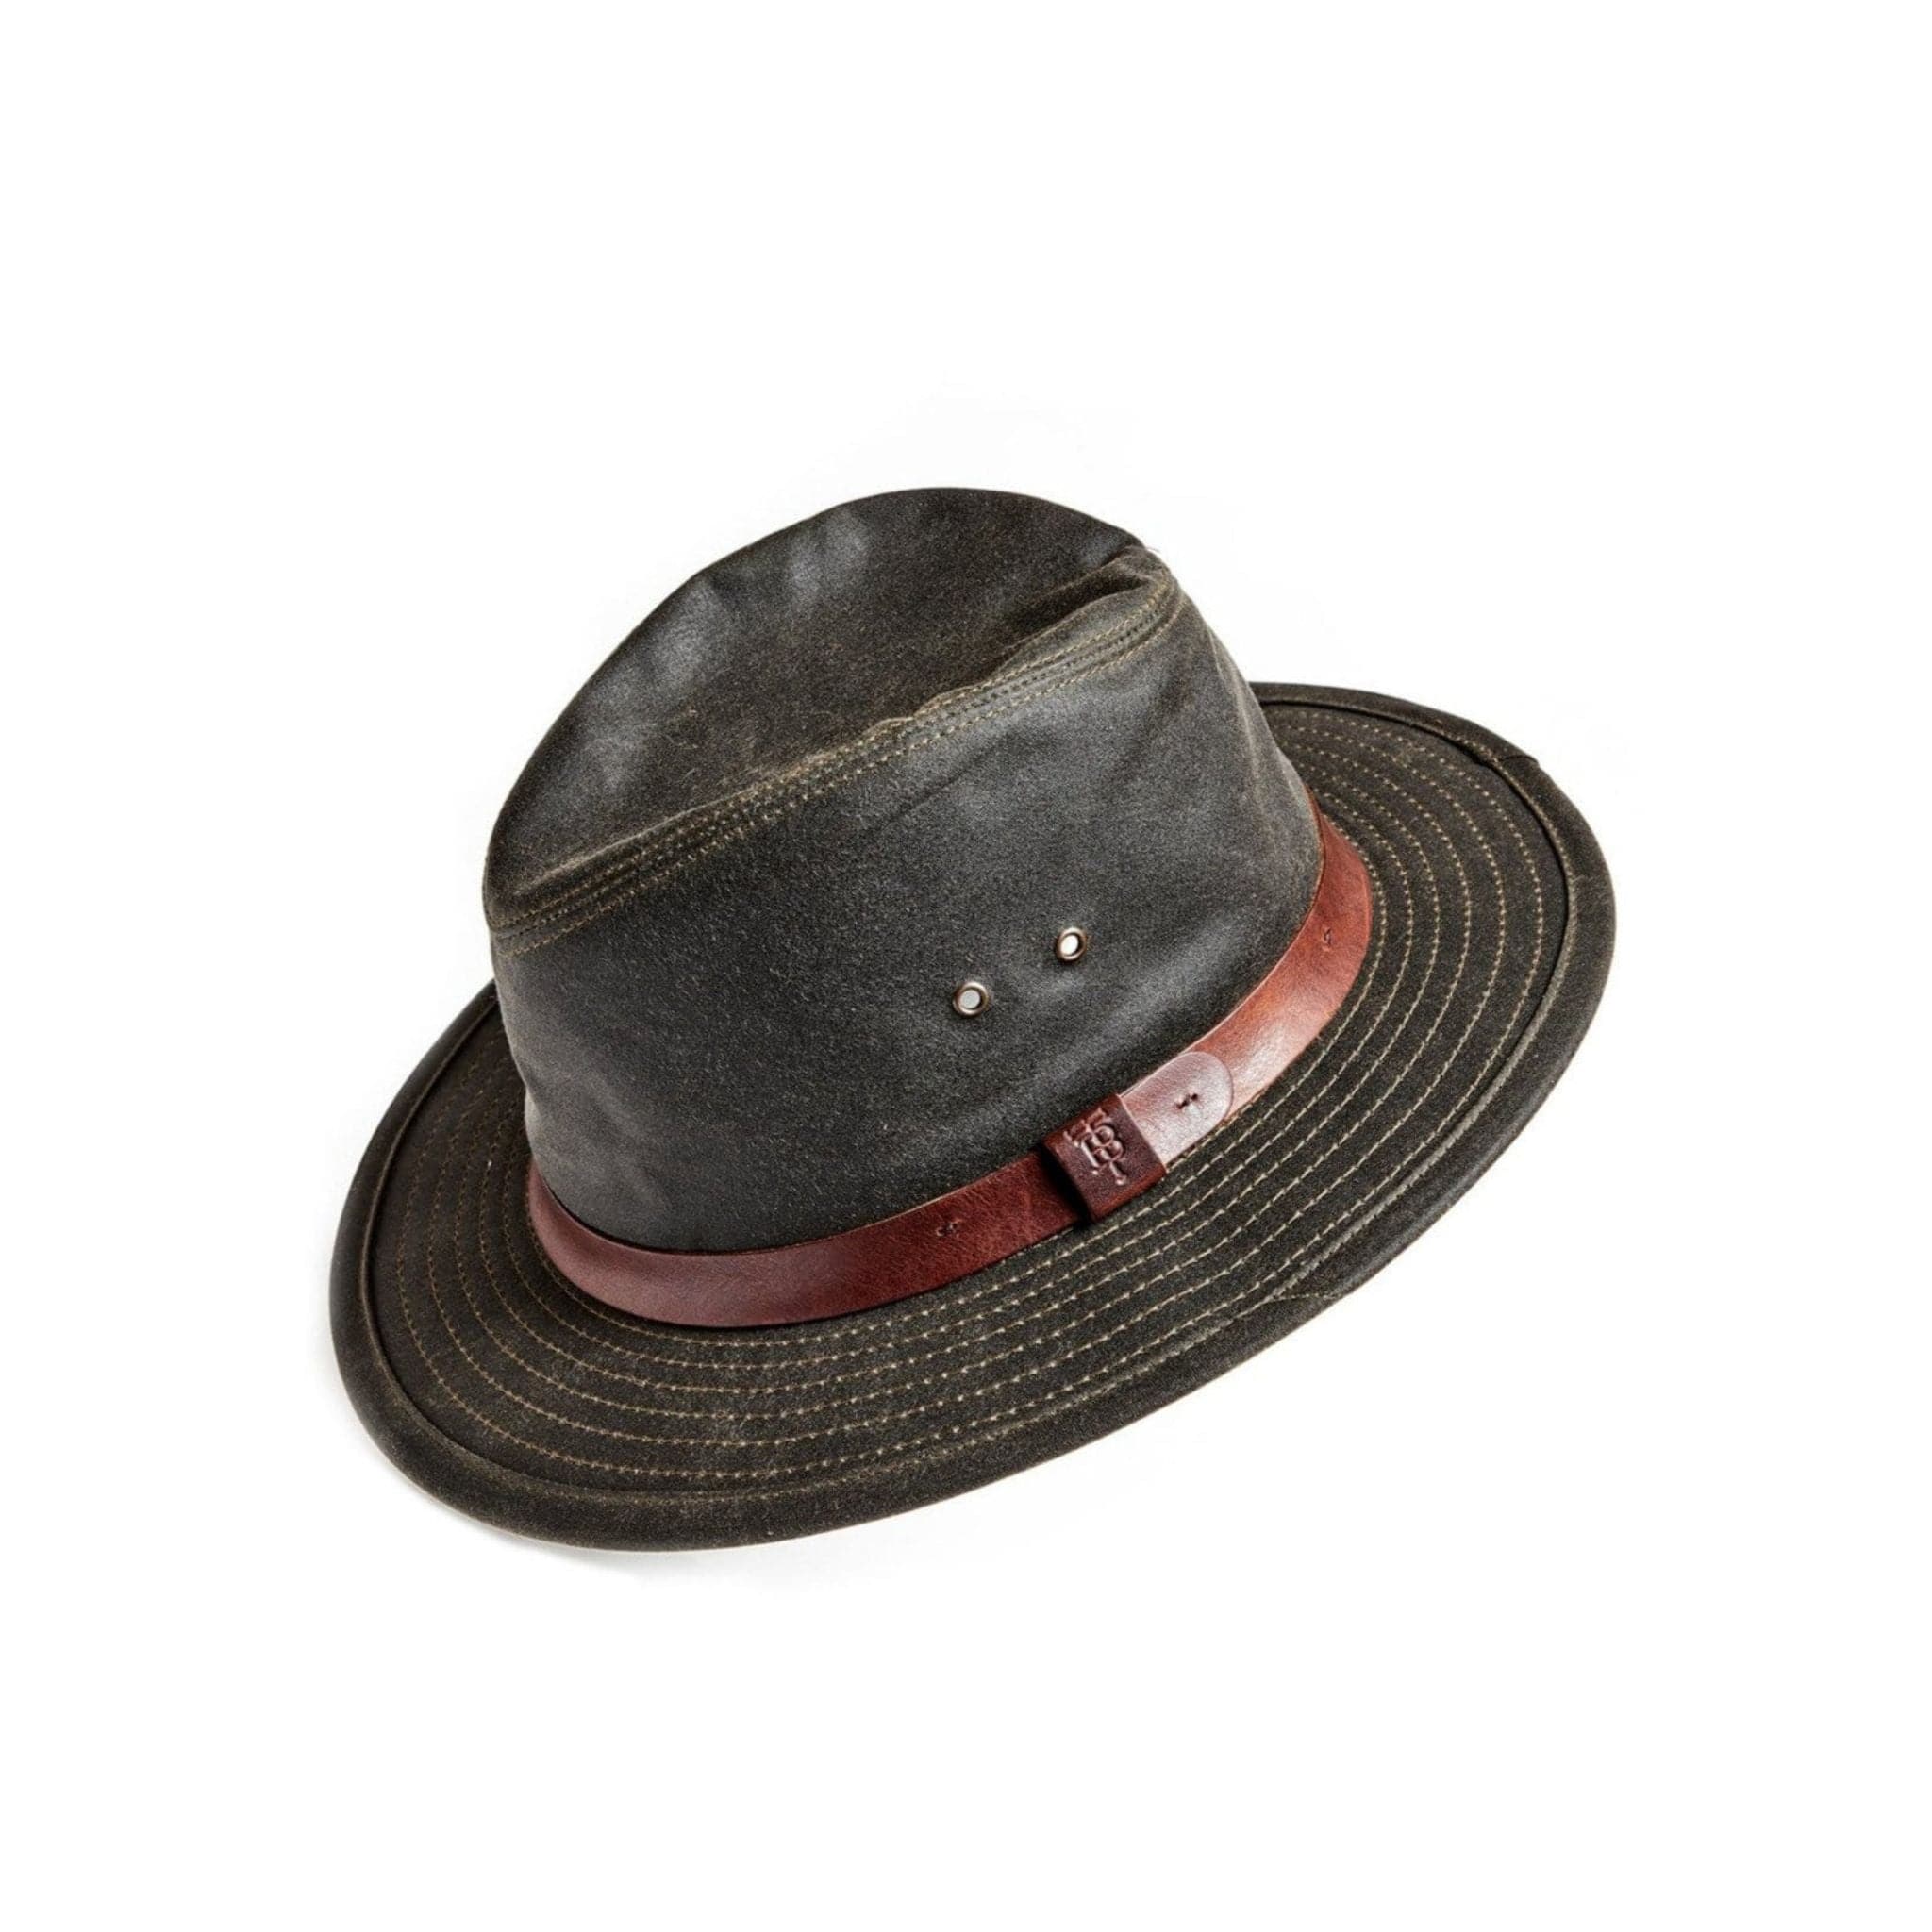 Field Hat for Hunting – Tom Beckbe